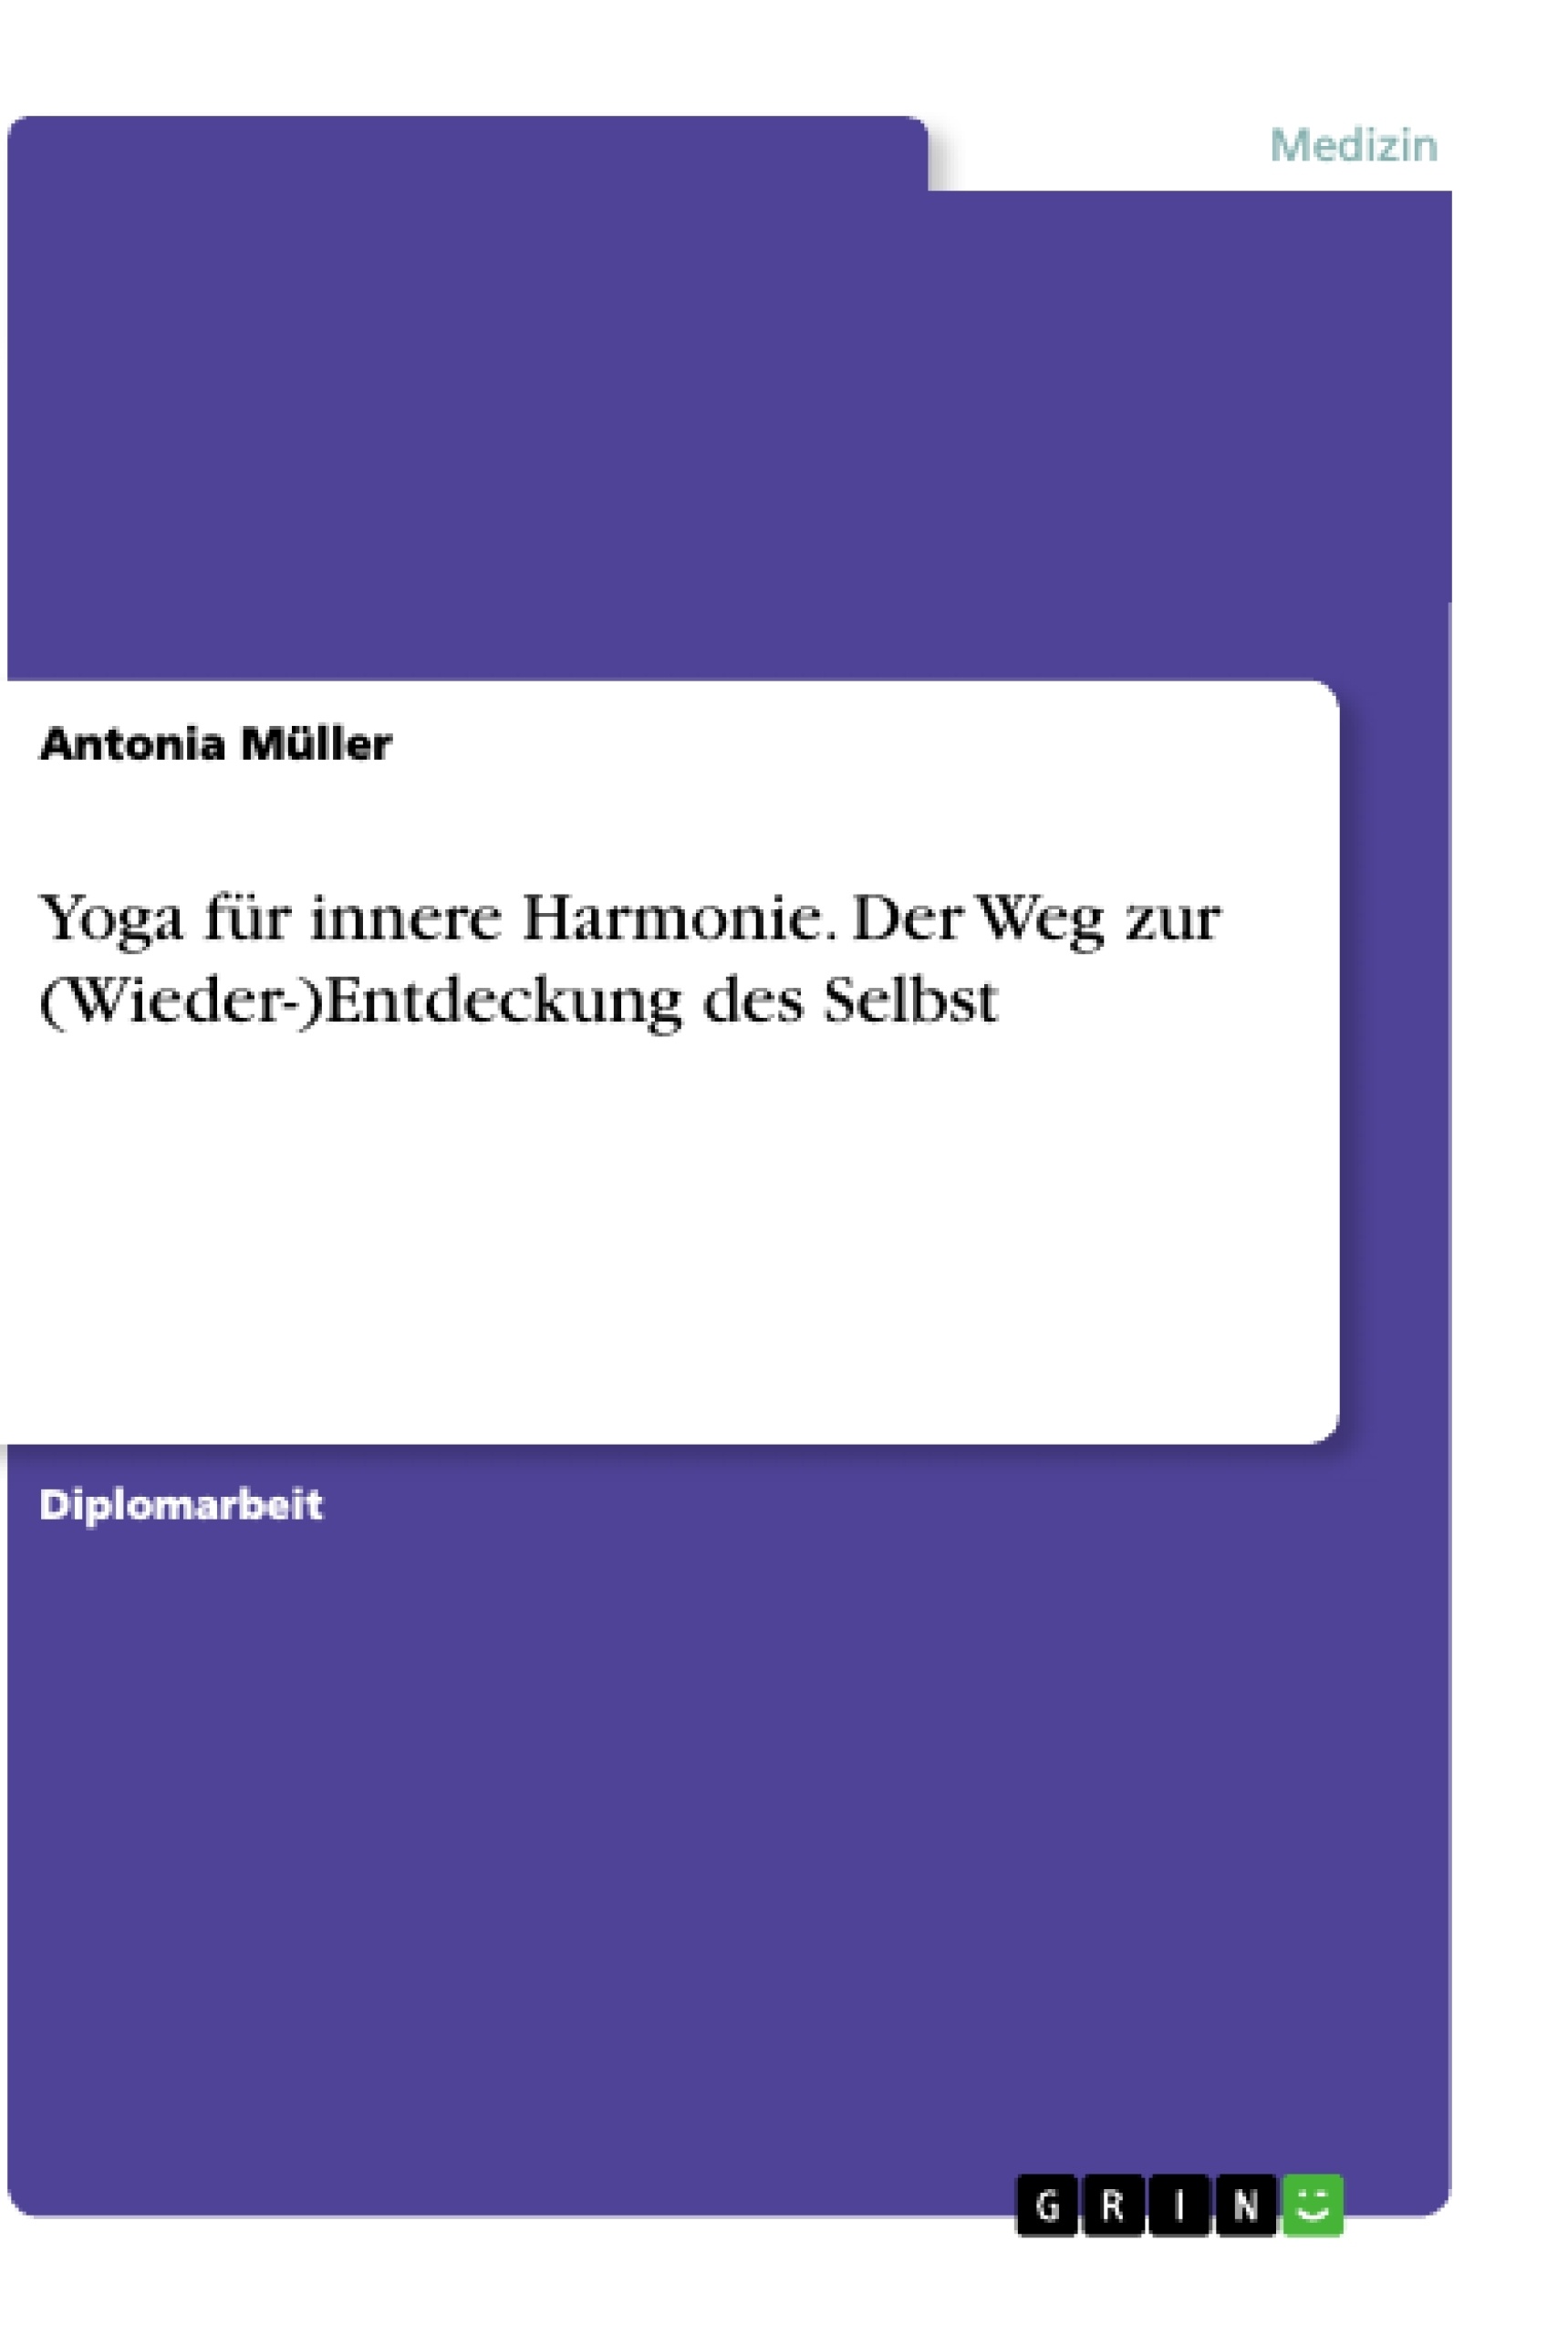 Title: Yoga für innere Harmonie. Der Weg zur (Wieder-)Entdeckung des Selbst